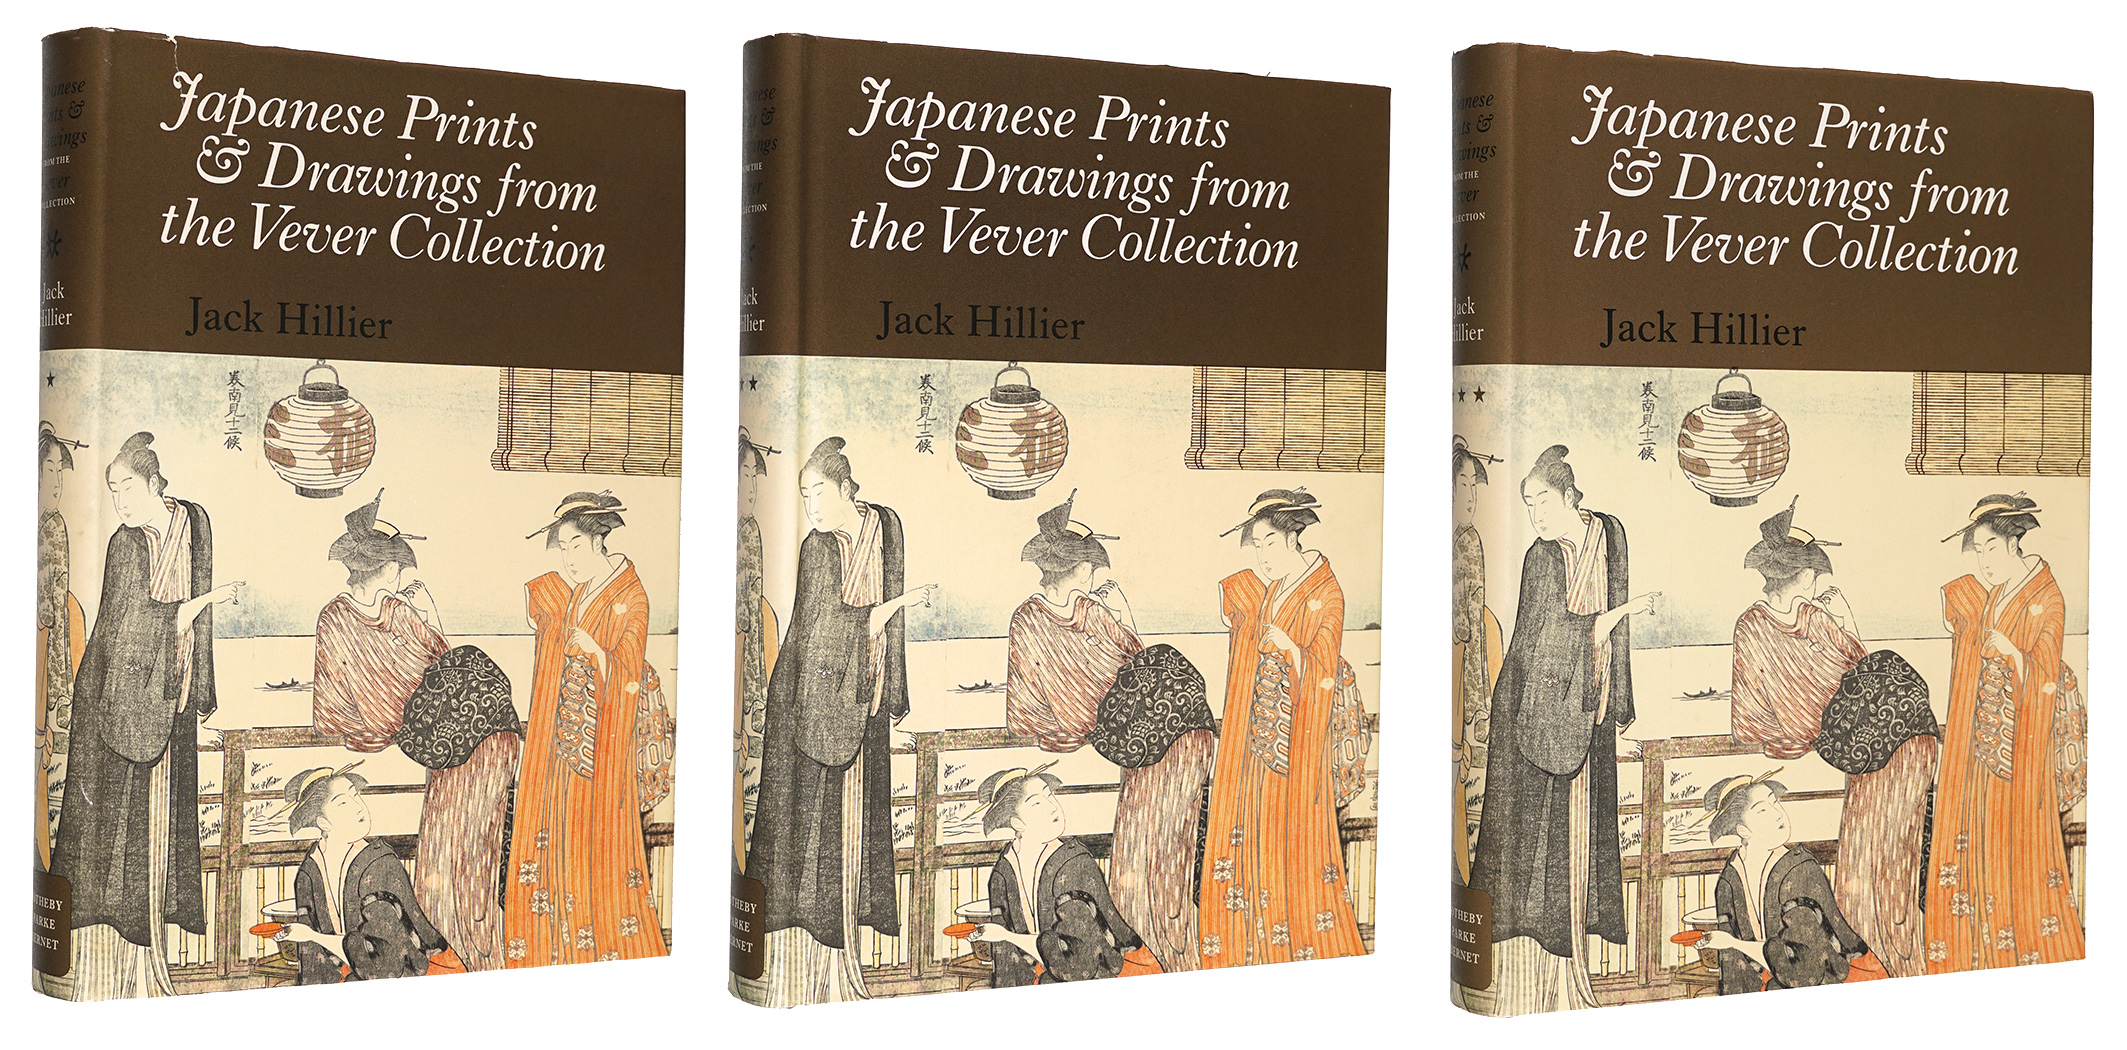 ｢（英）Japanese Prints & Drawings from the Vever Collection｣ジャック・ヒリア著／